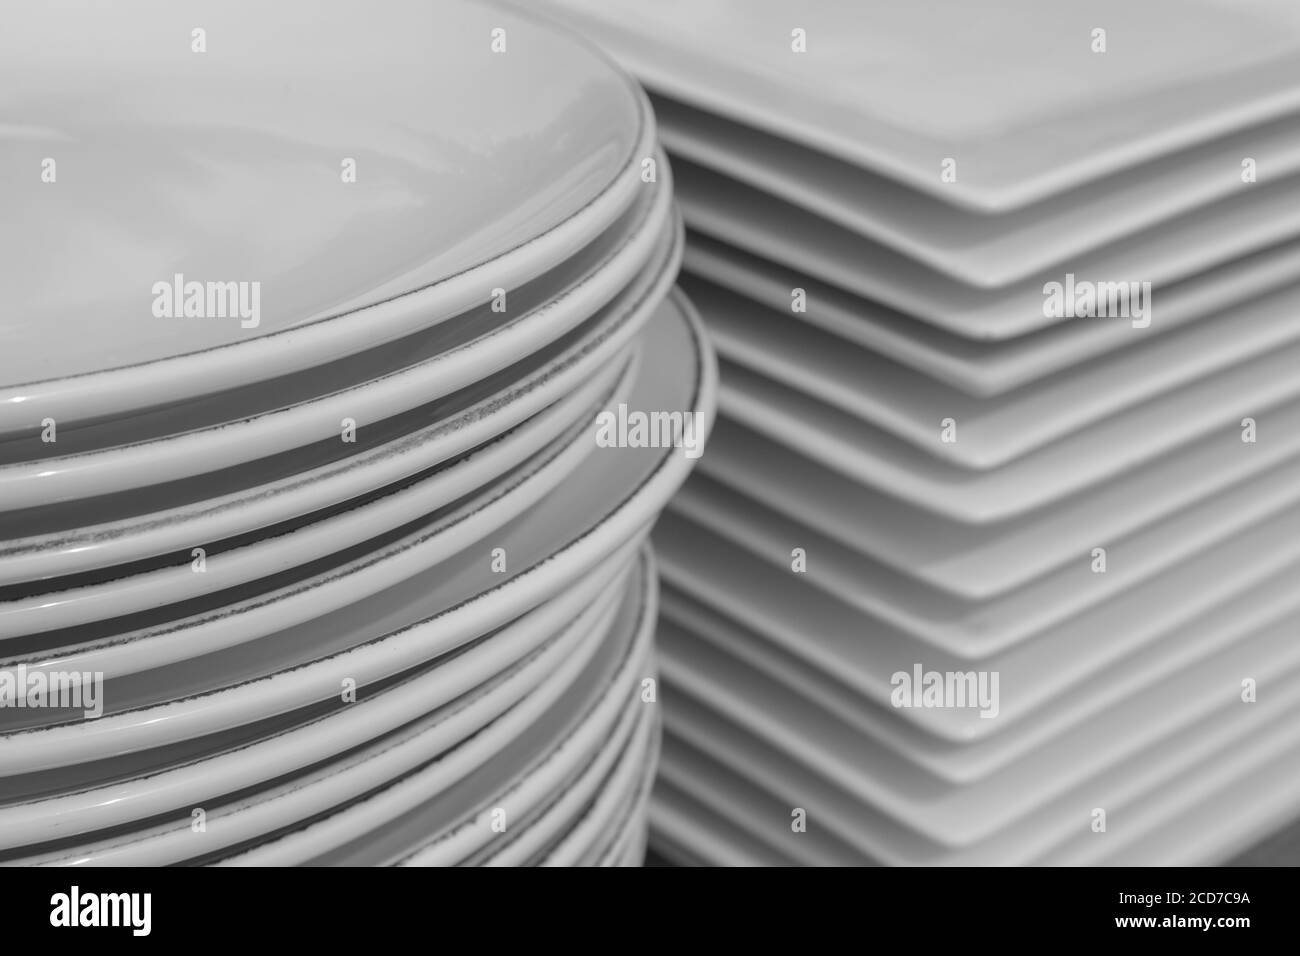 Platos blancos diferentes tipos de platos de cerámica blanca con diferentes  formas sobre un fondo blanco.